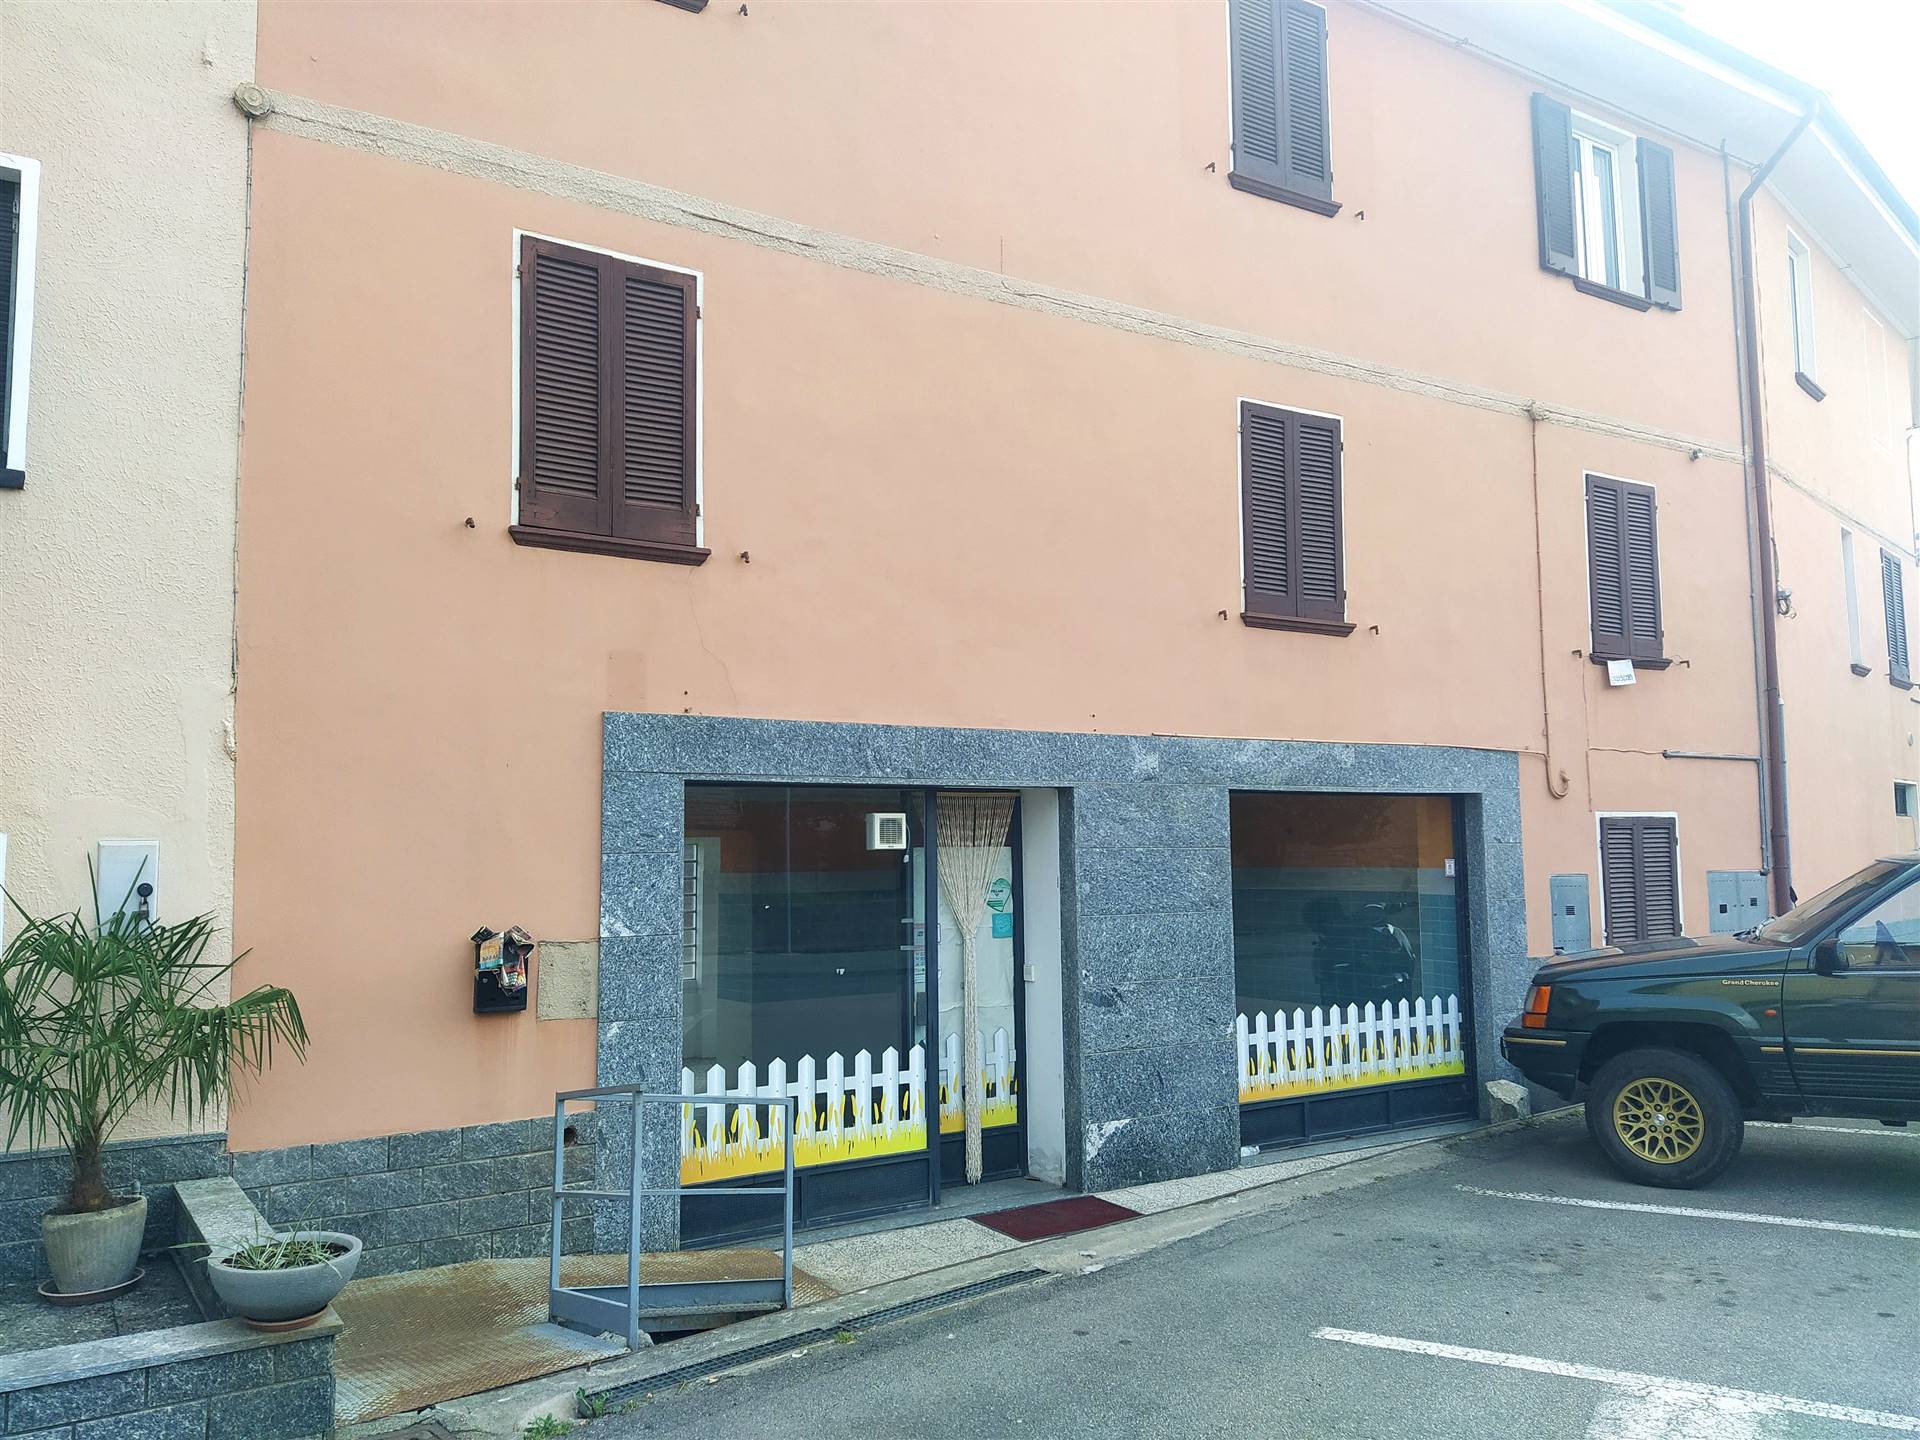 Immobile Commerciale in vendita a Gargallo, 2 locali, prezzo € 59.000 | CambioCasa.it